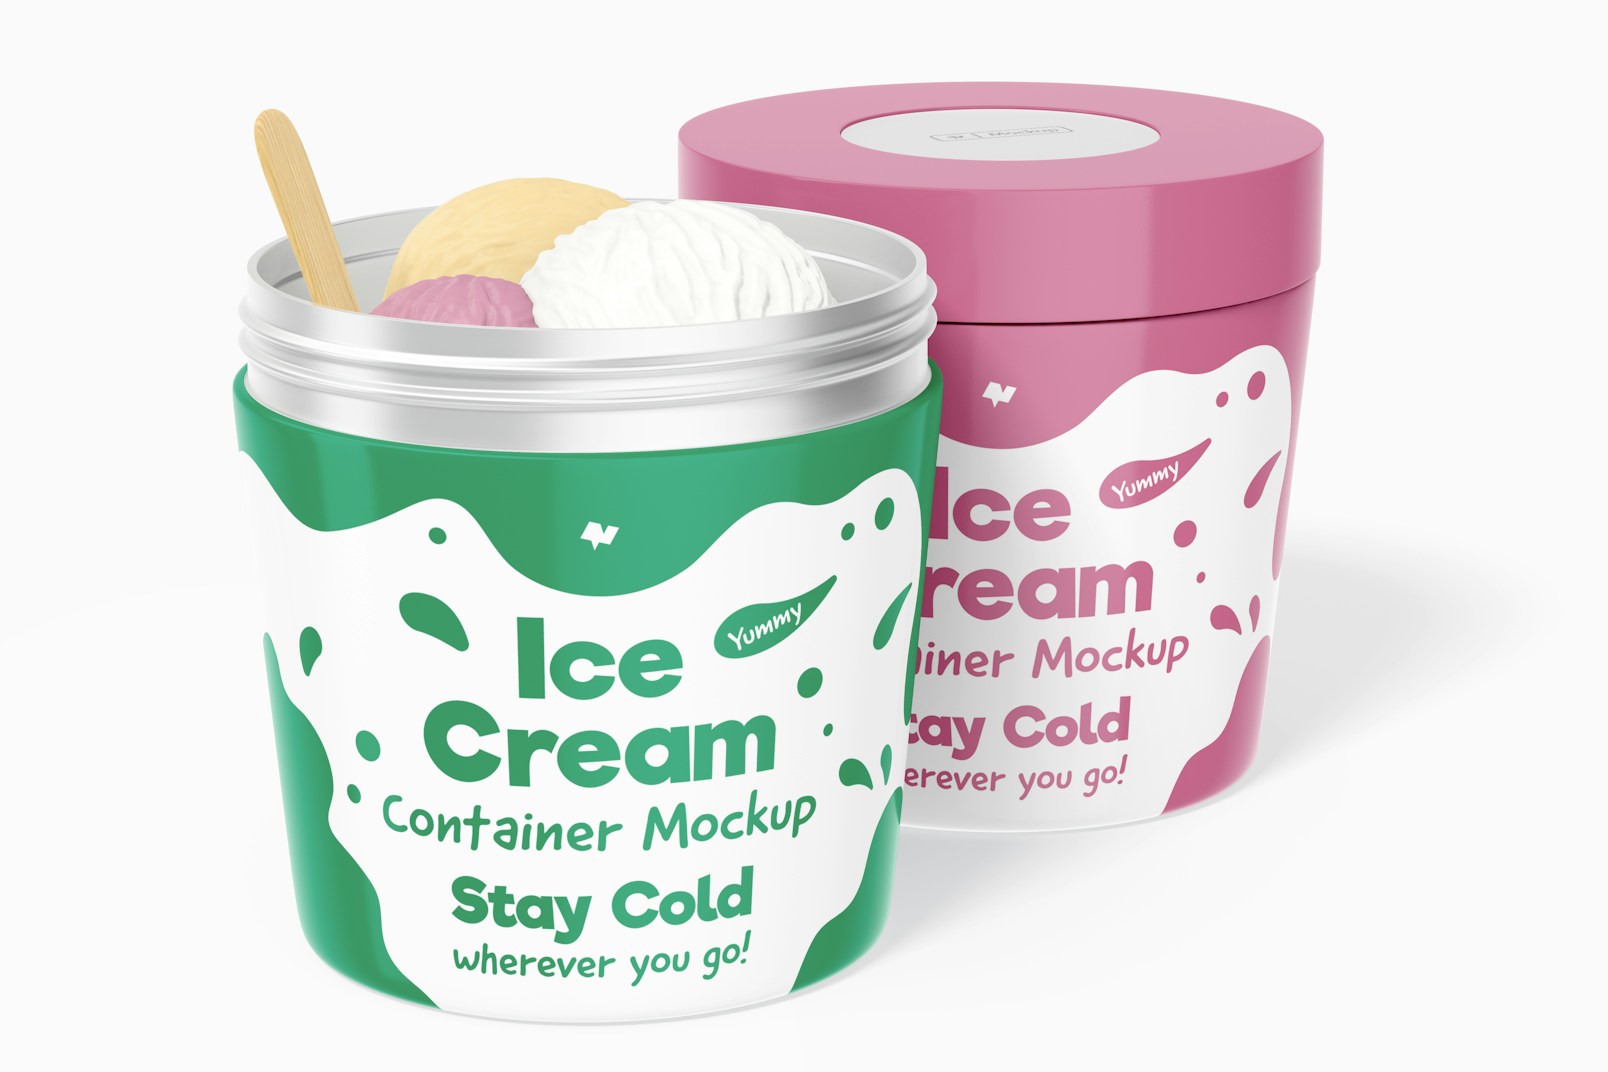 Metallic Ice Cream Containers Mockup